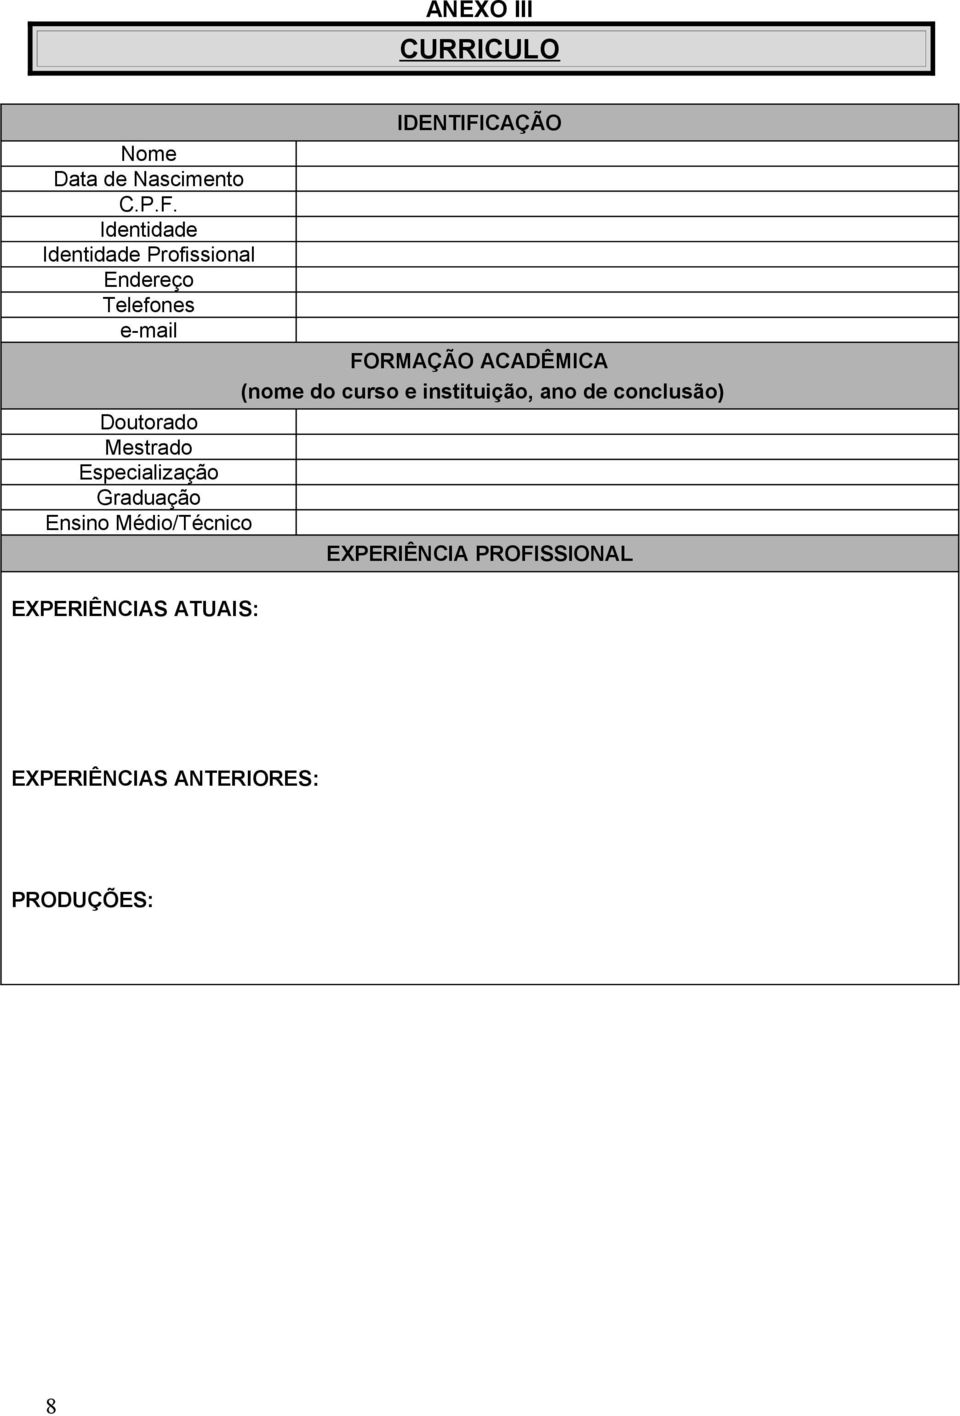 Especialização Graduação Ensino Médio/Técnico IDENTIFICAÇÃO FORMAÇÃO ACADÊMICA (nome